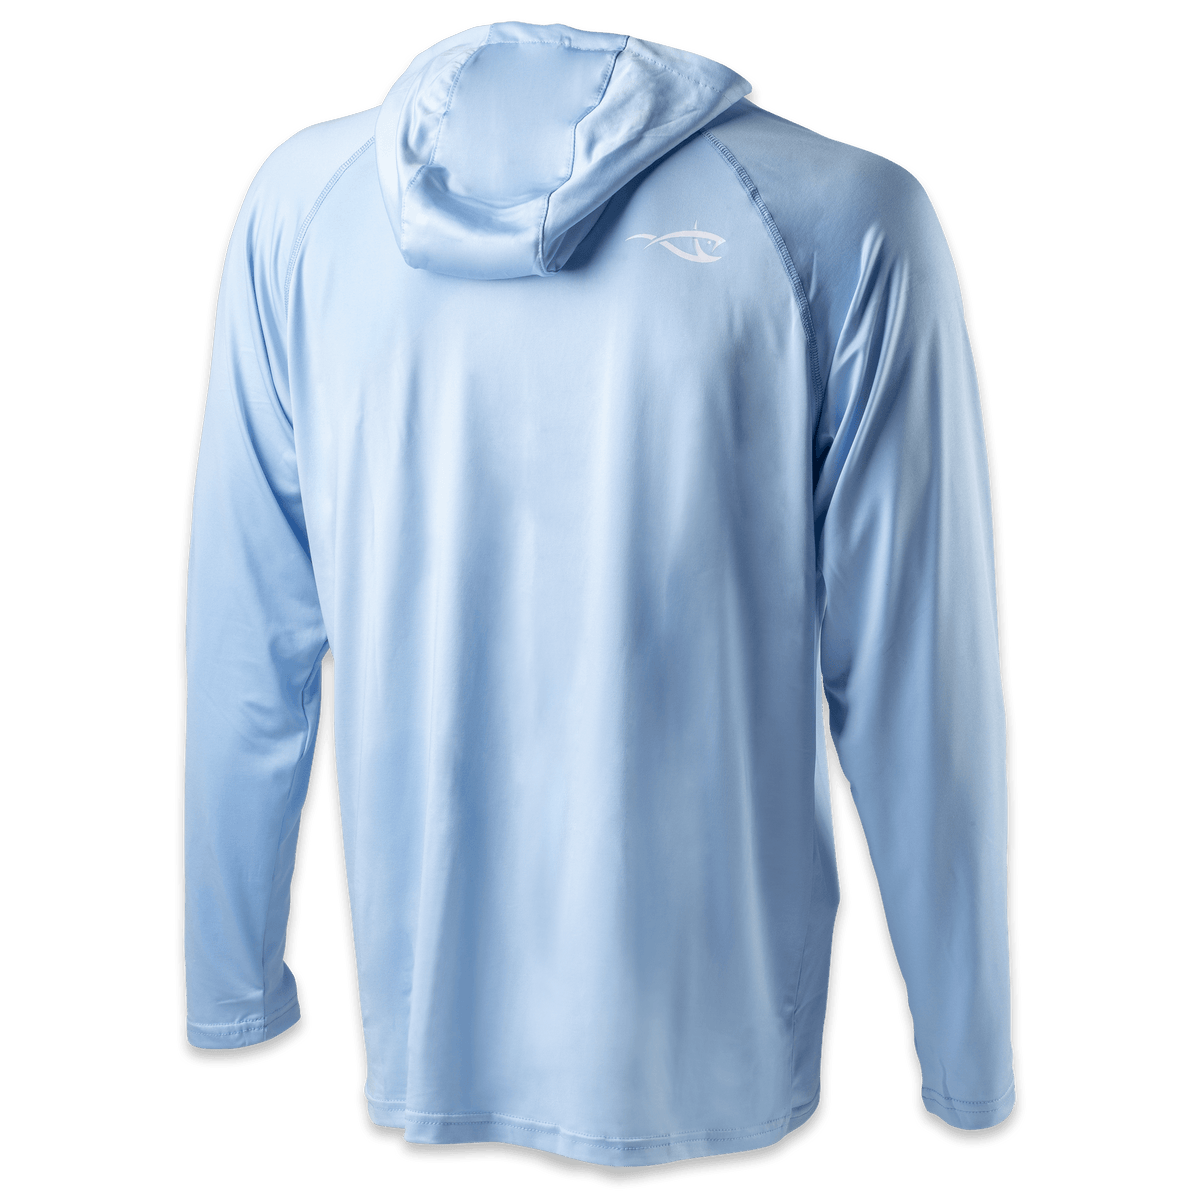 Baju Pancing Shimano Fishing clothes Tops Shirt Jacket Anti-UV